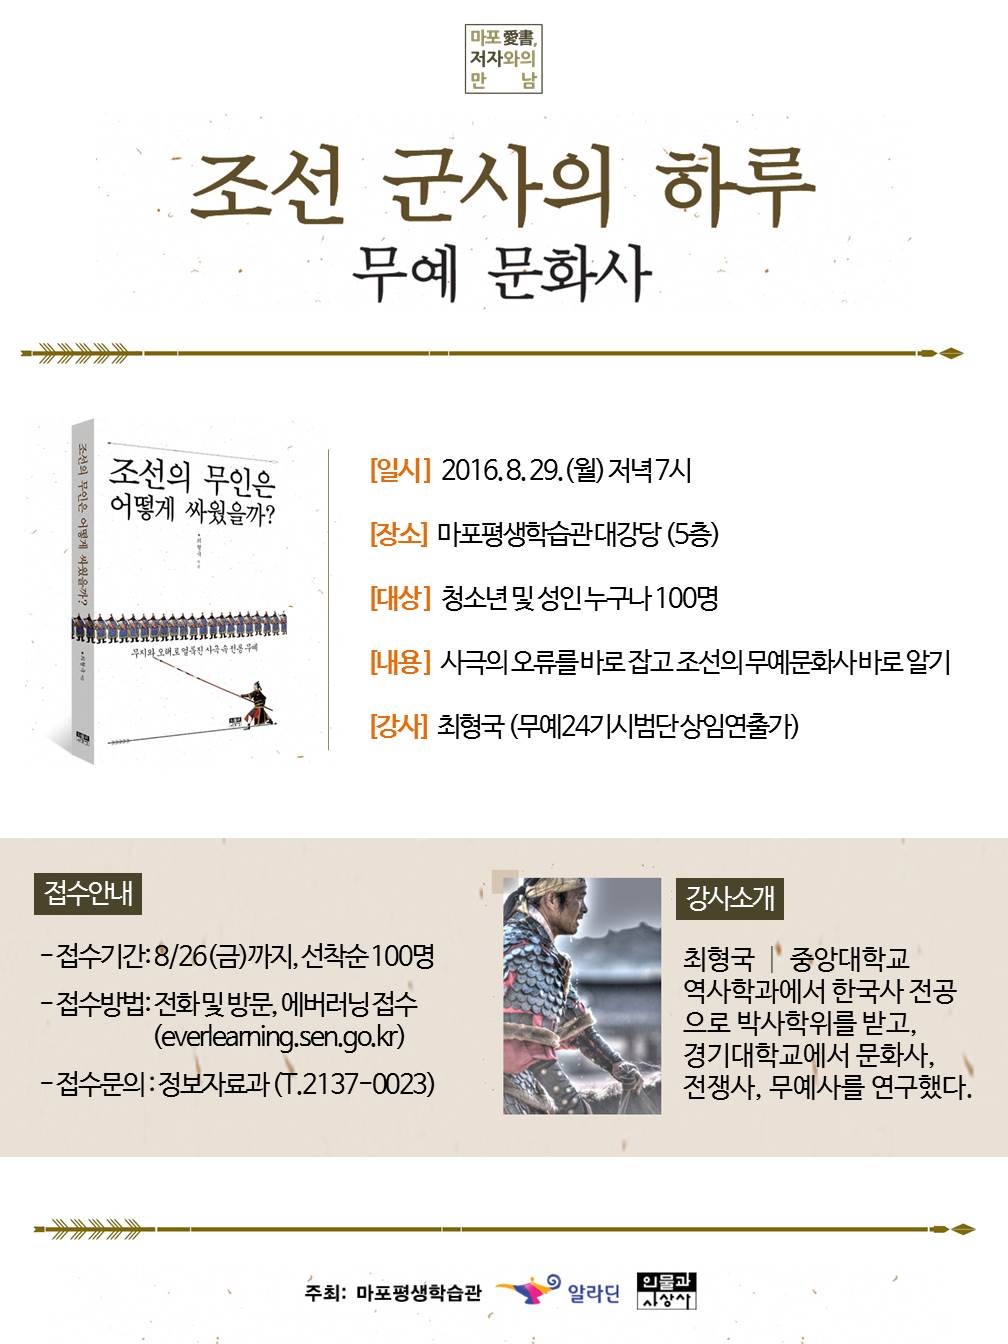 서울특별시교육청 마포평생학습관은 29일 <조선 군사의 하루>라는 주제의 북콘서트를 개최한다고 밝혔다.